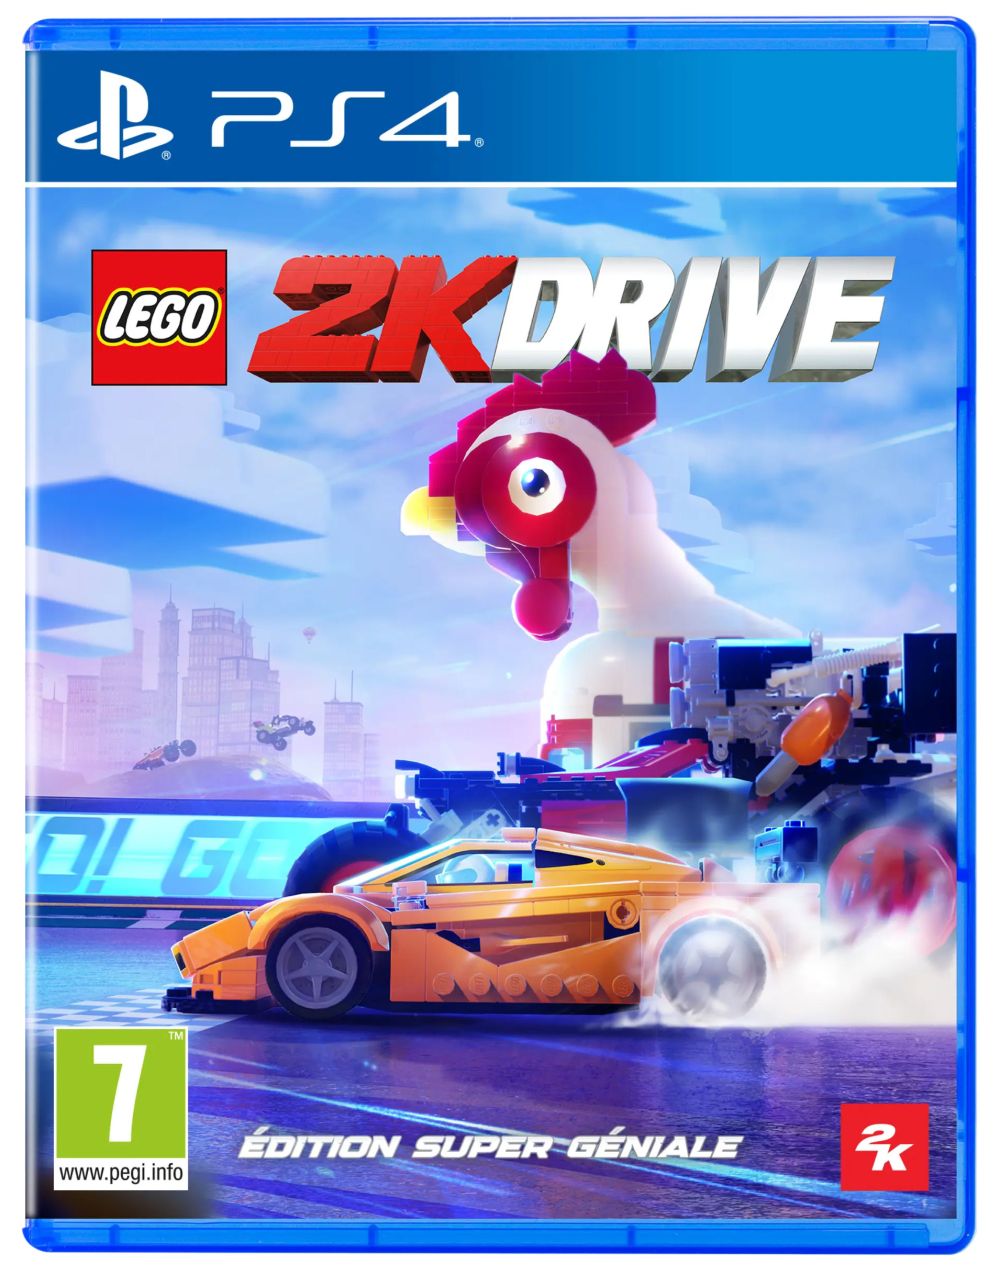 LEGO Jeux vidéo PS4-L2KD-ESG pas cher, LEGO 2K Drive Édition Super